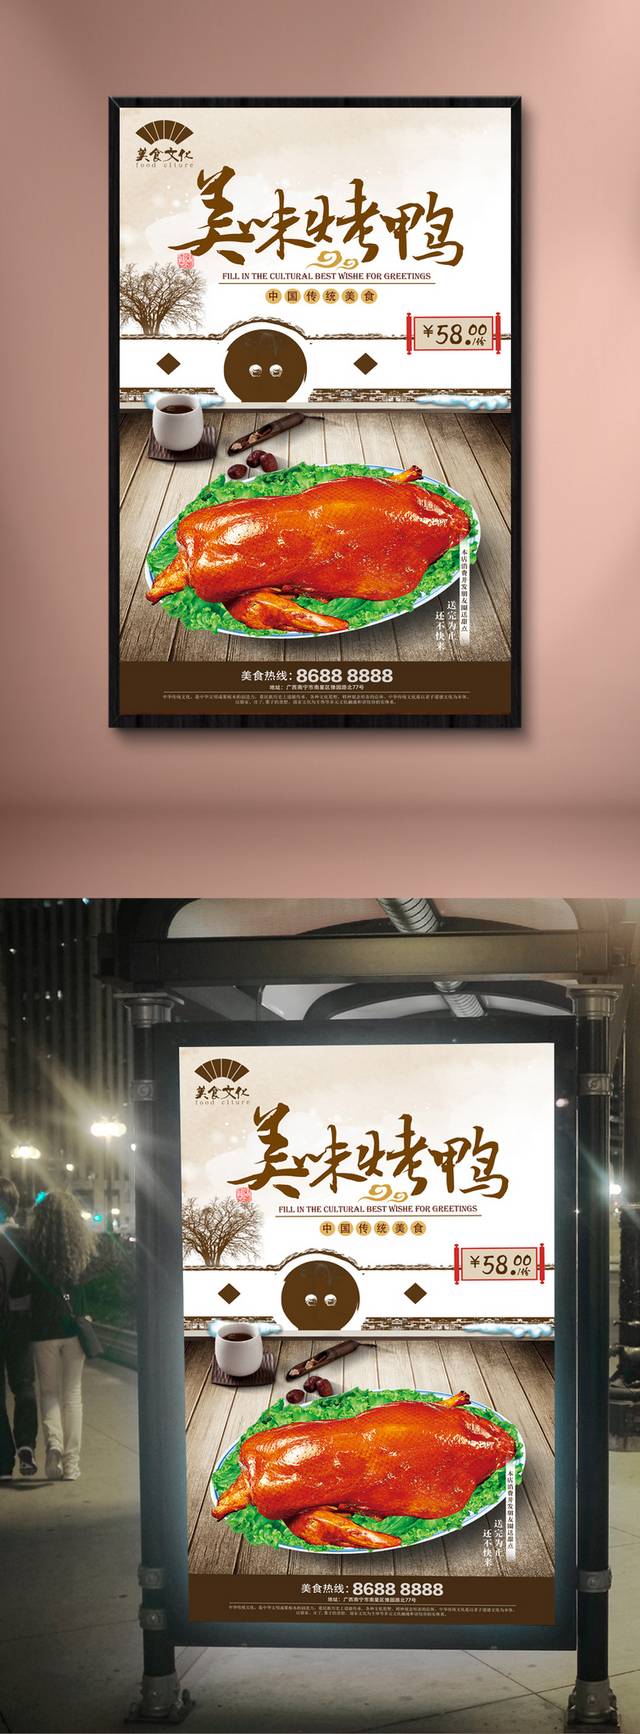 中式经典酱鸭宣传海报设计